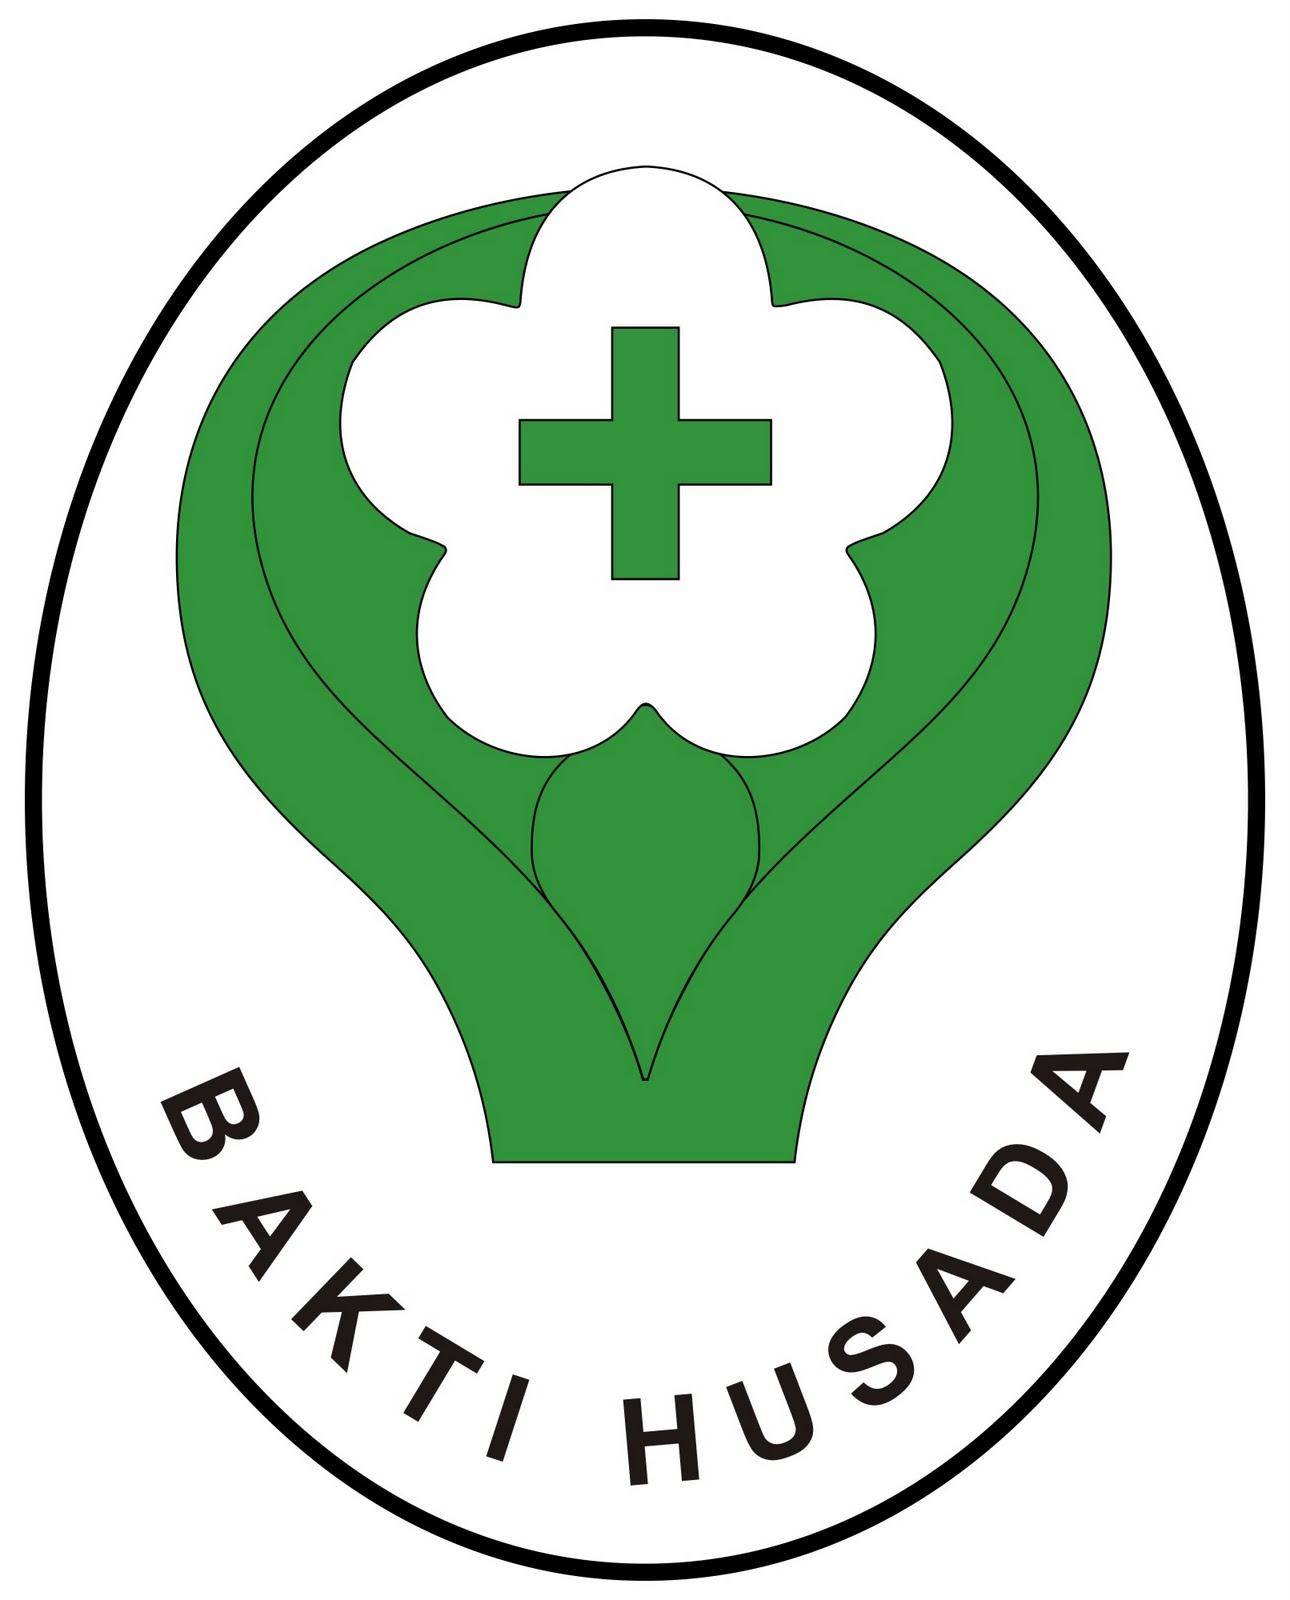 Kementerian kesehatan republik indonesia bhumi husada 天然药物 